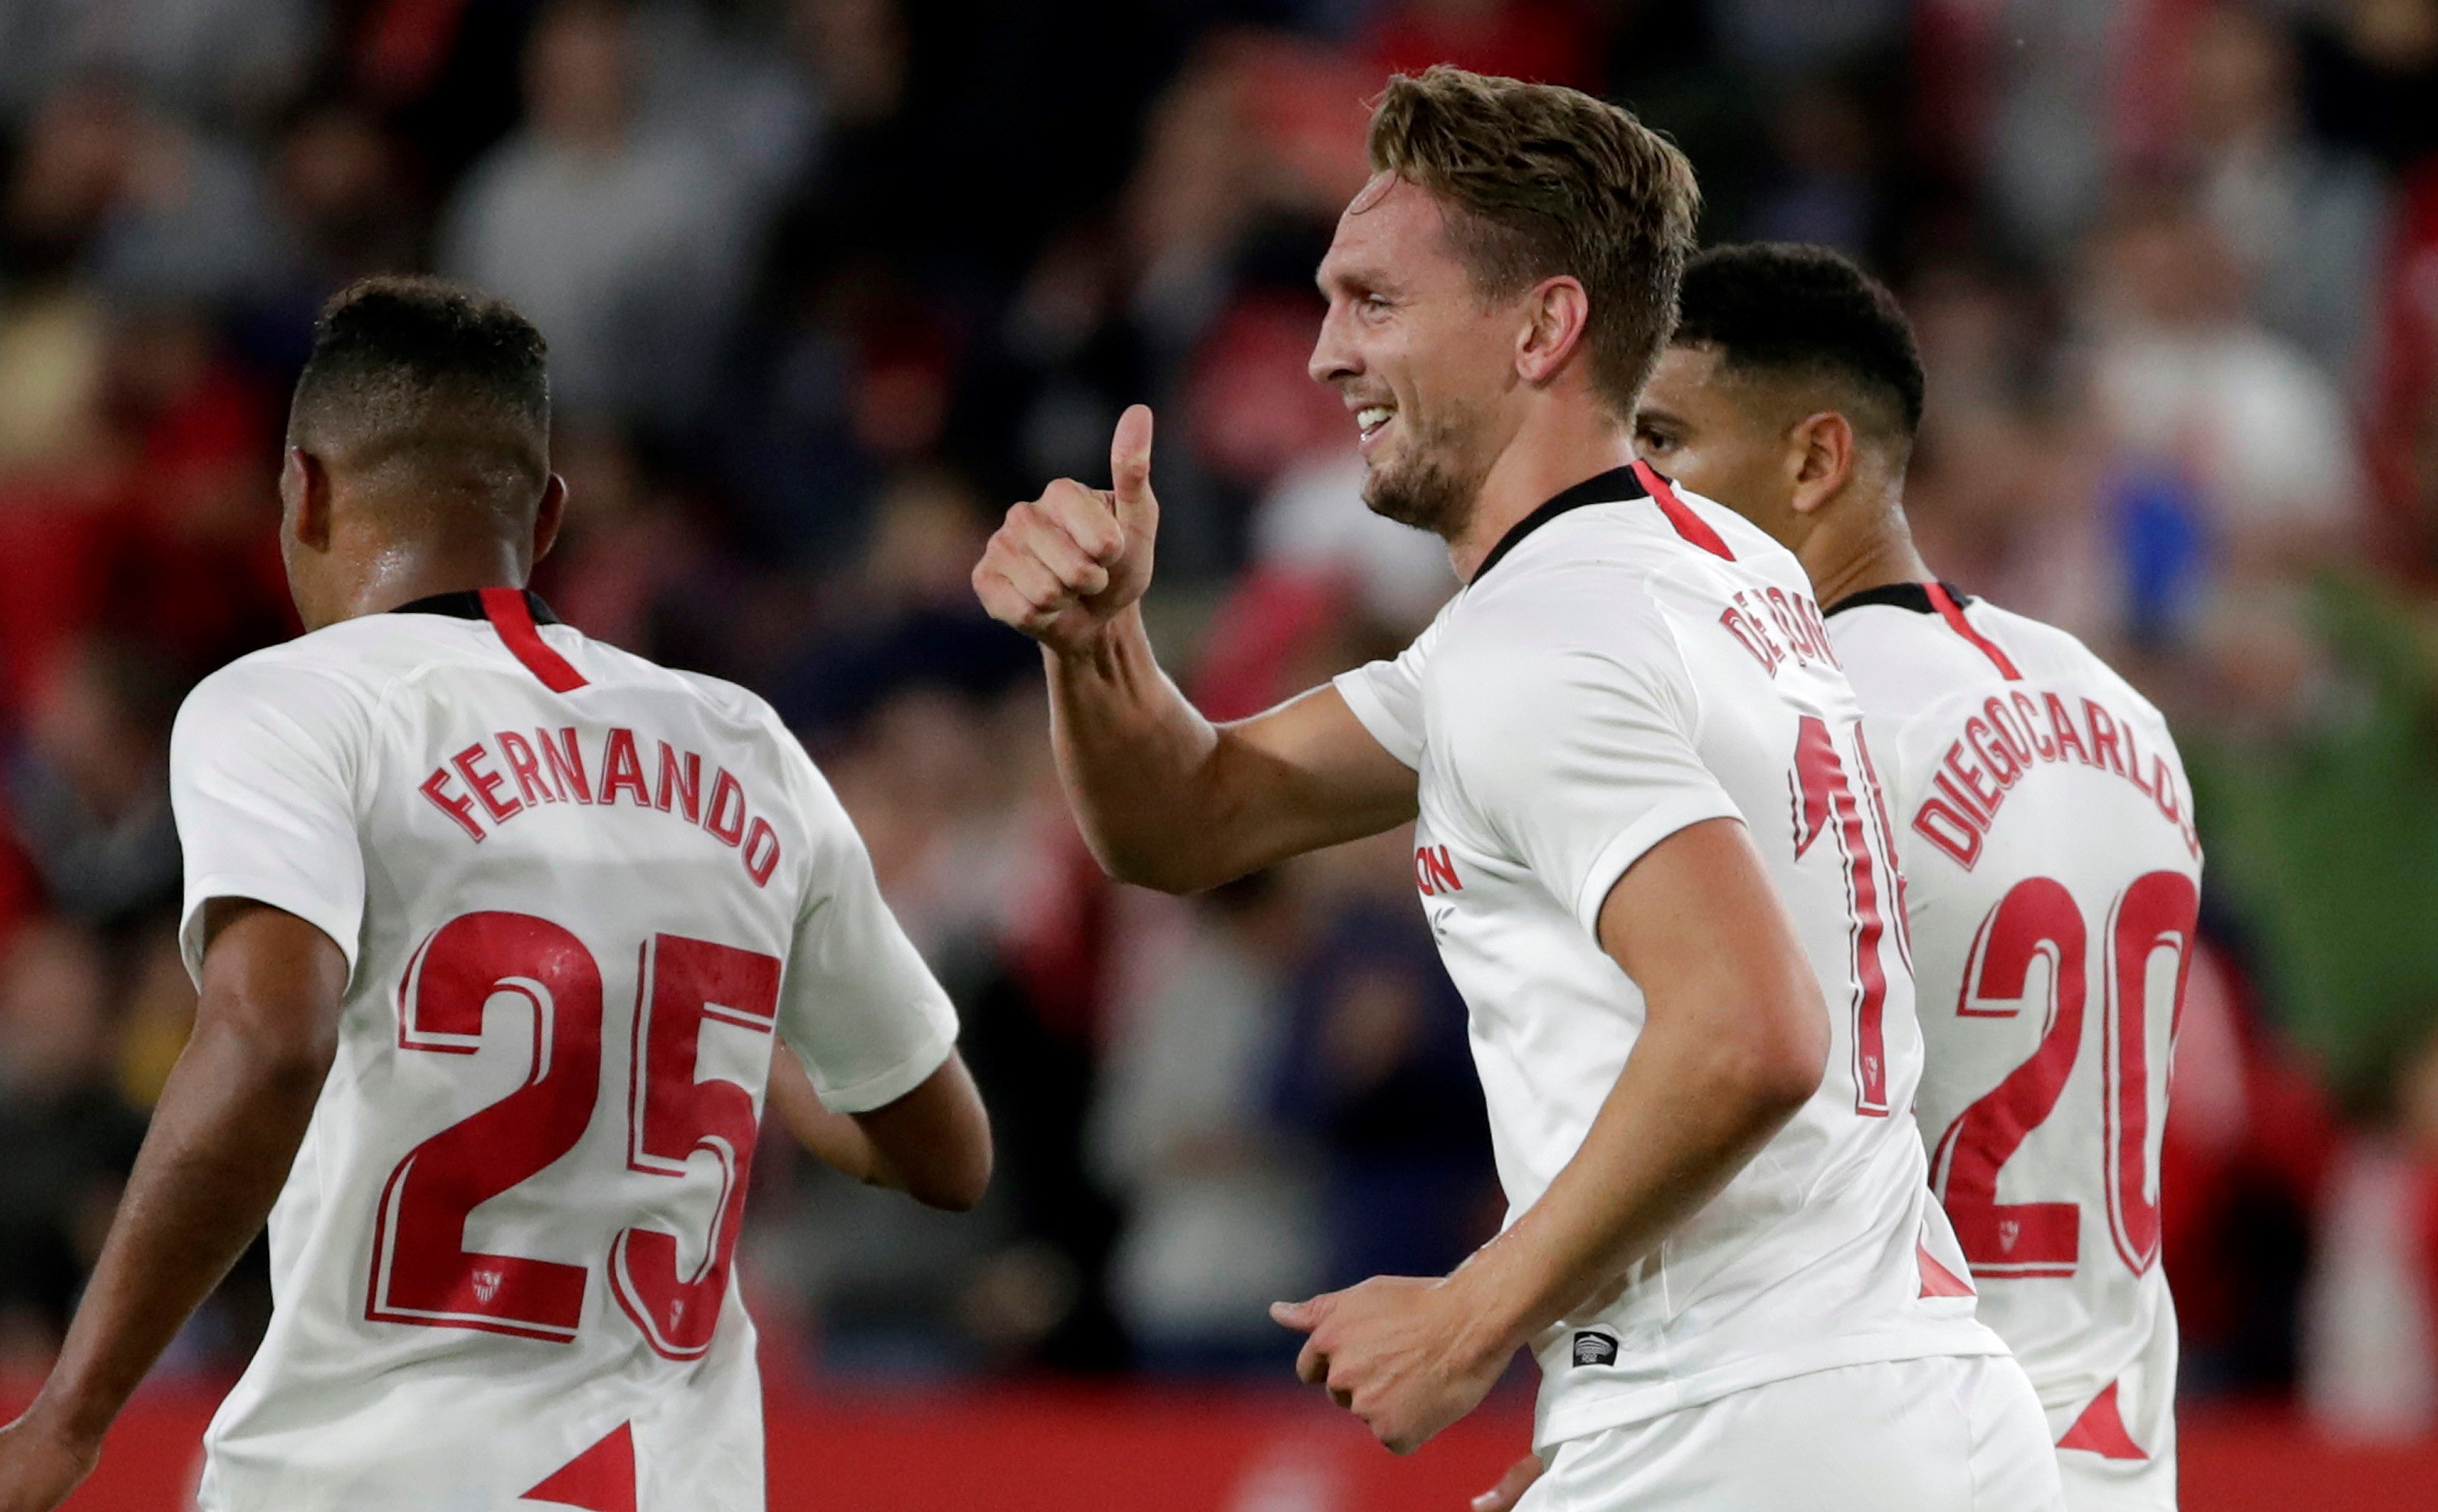  El delantero holandés del Sevilla, Luuk de Jong (c), celebra el primer gol  durante el encuentro contra el Levante en el estadio Sánchez Pizjuán. (Foto Prensa Libre: EFE)